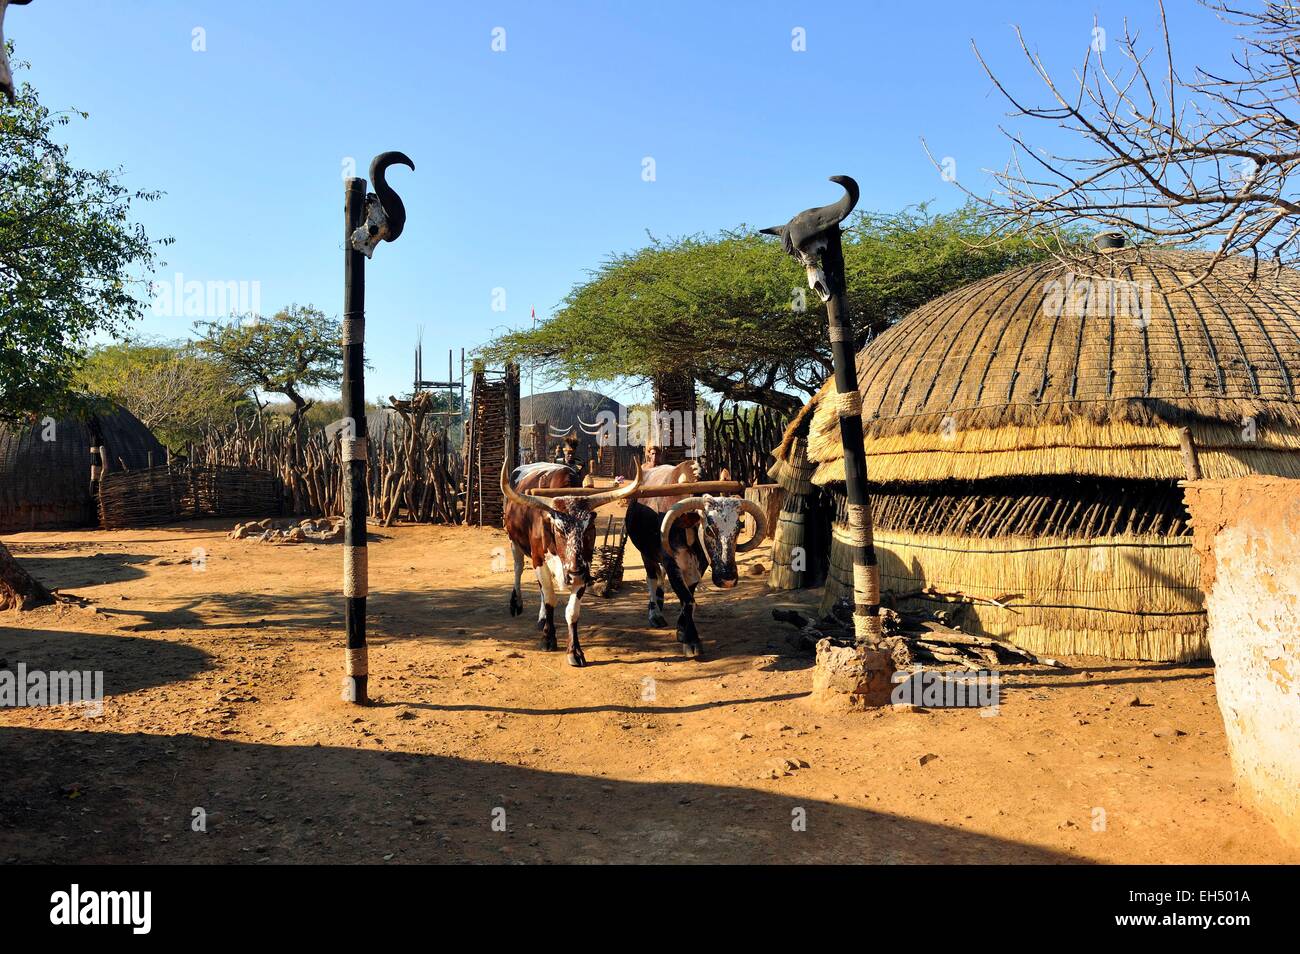 South Africa, Kwazulu Natal, Eshowe, Zululand, Shakaland Stock Photo